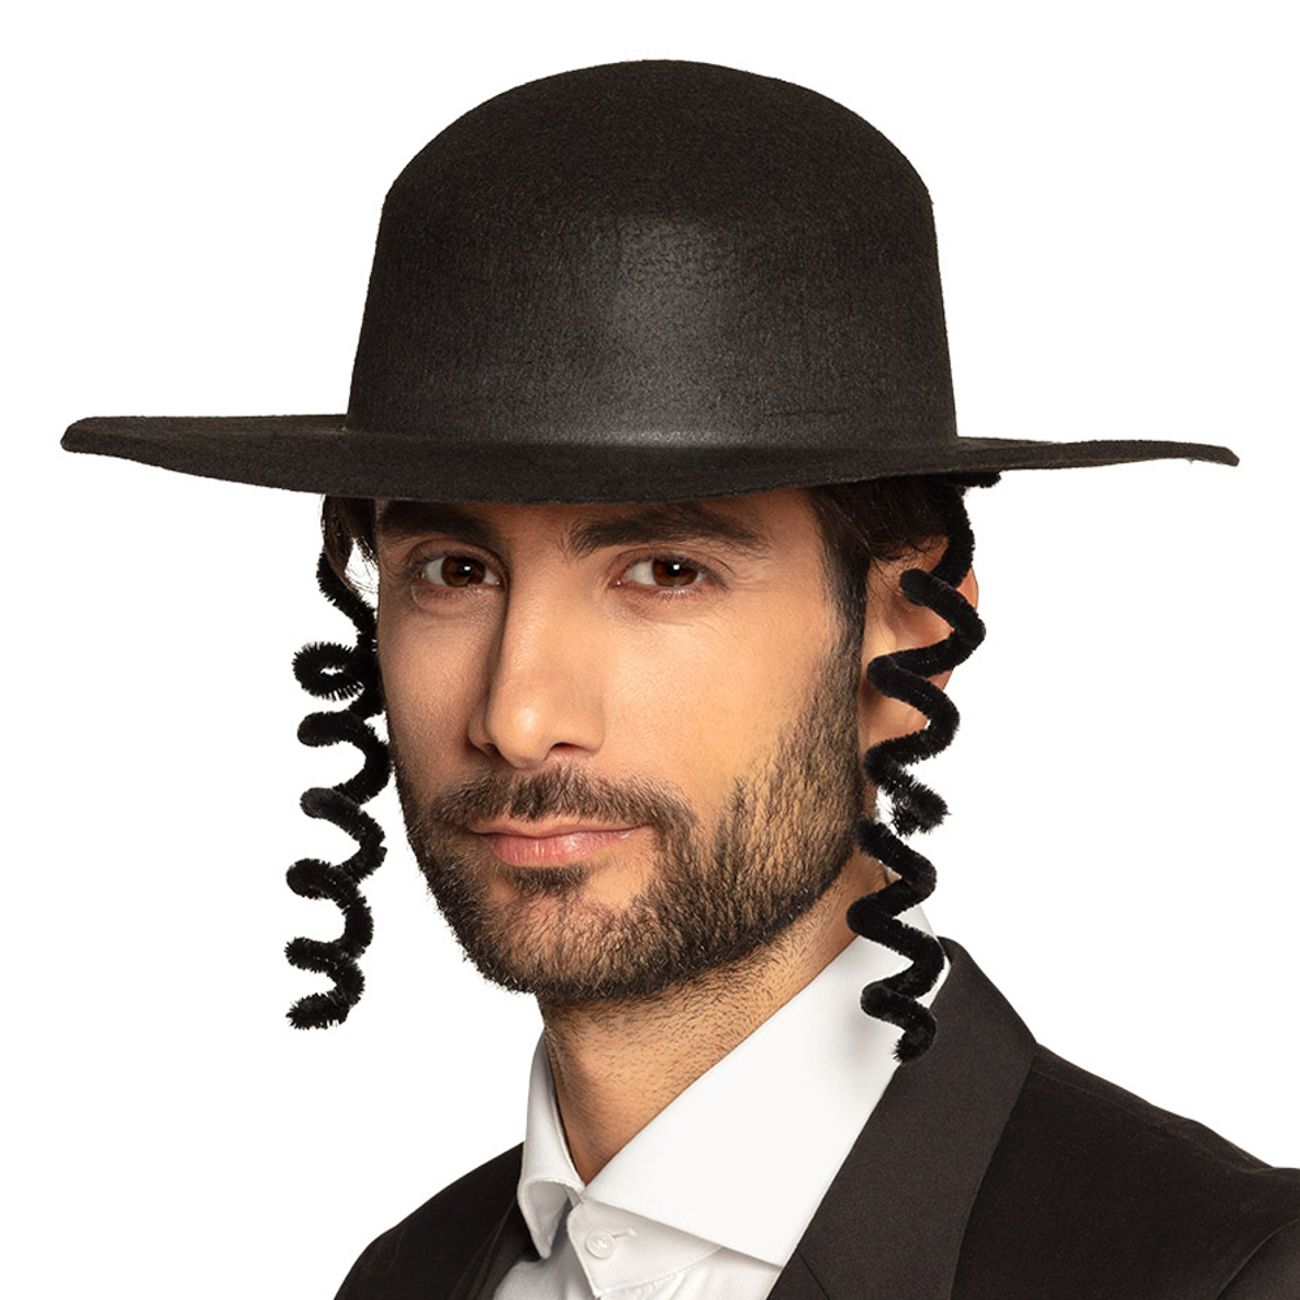 rabbi-hatt-13501-2